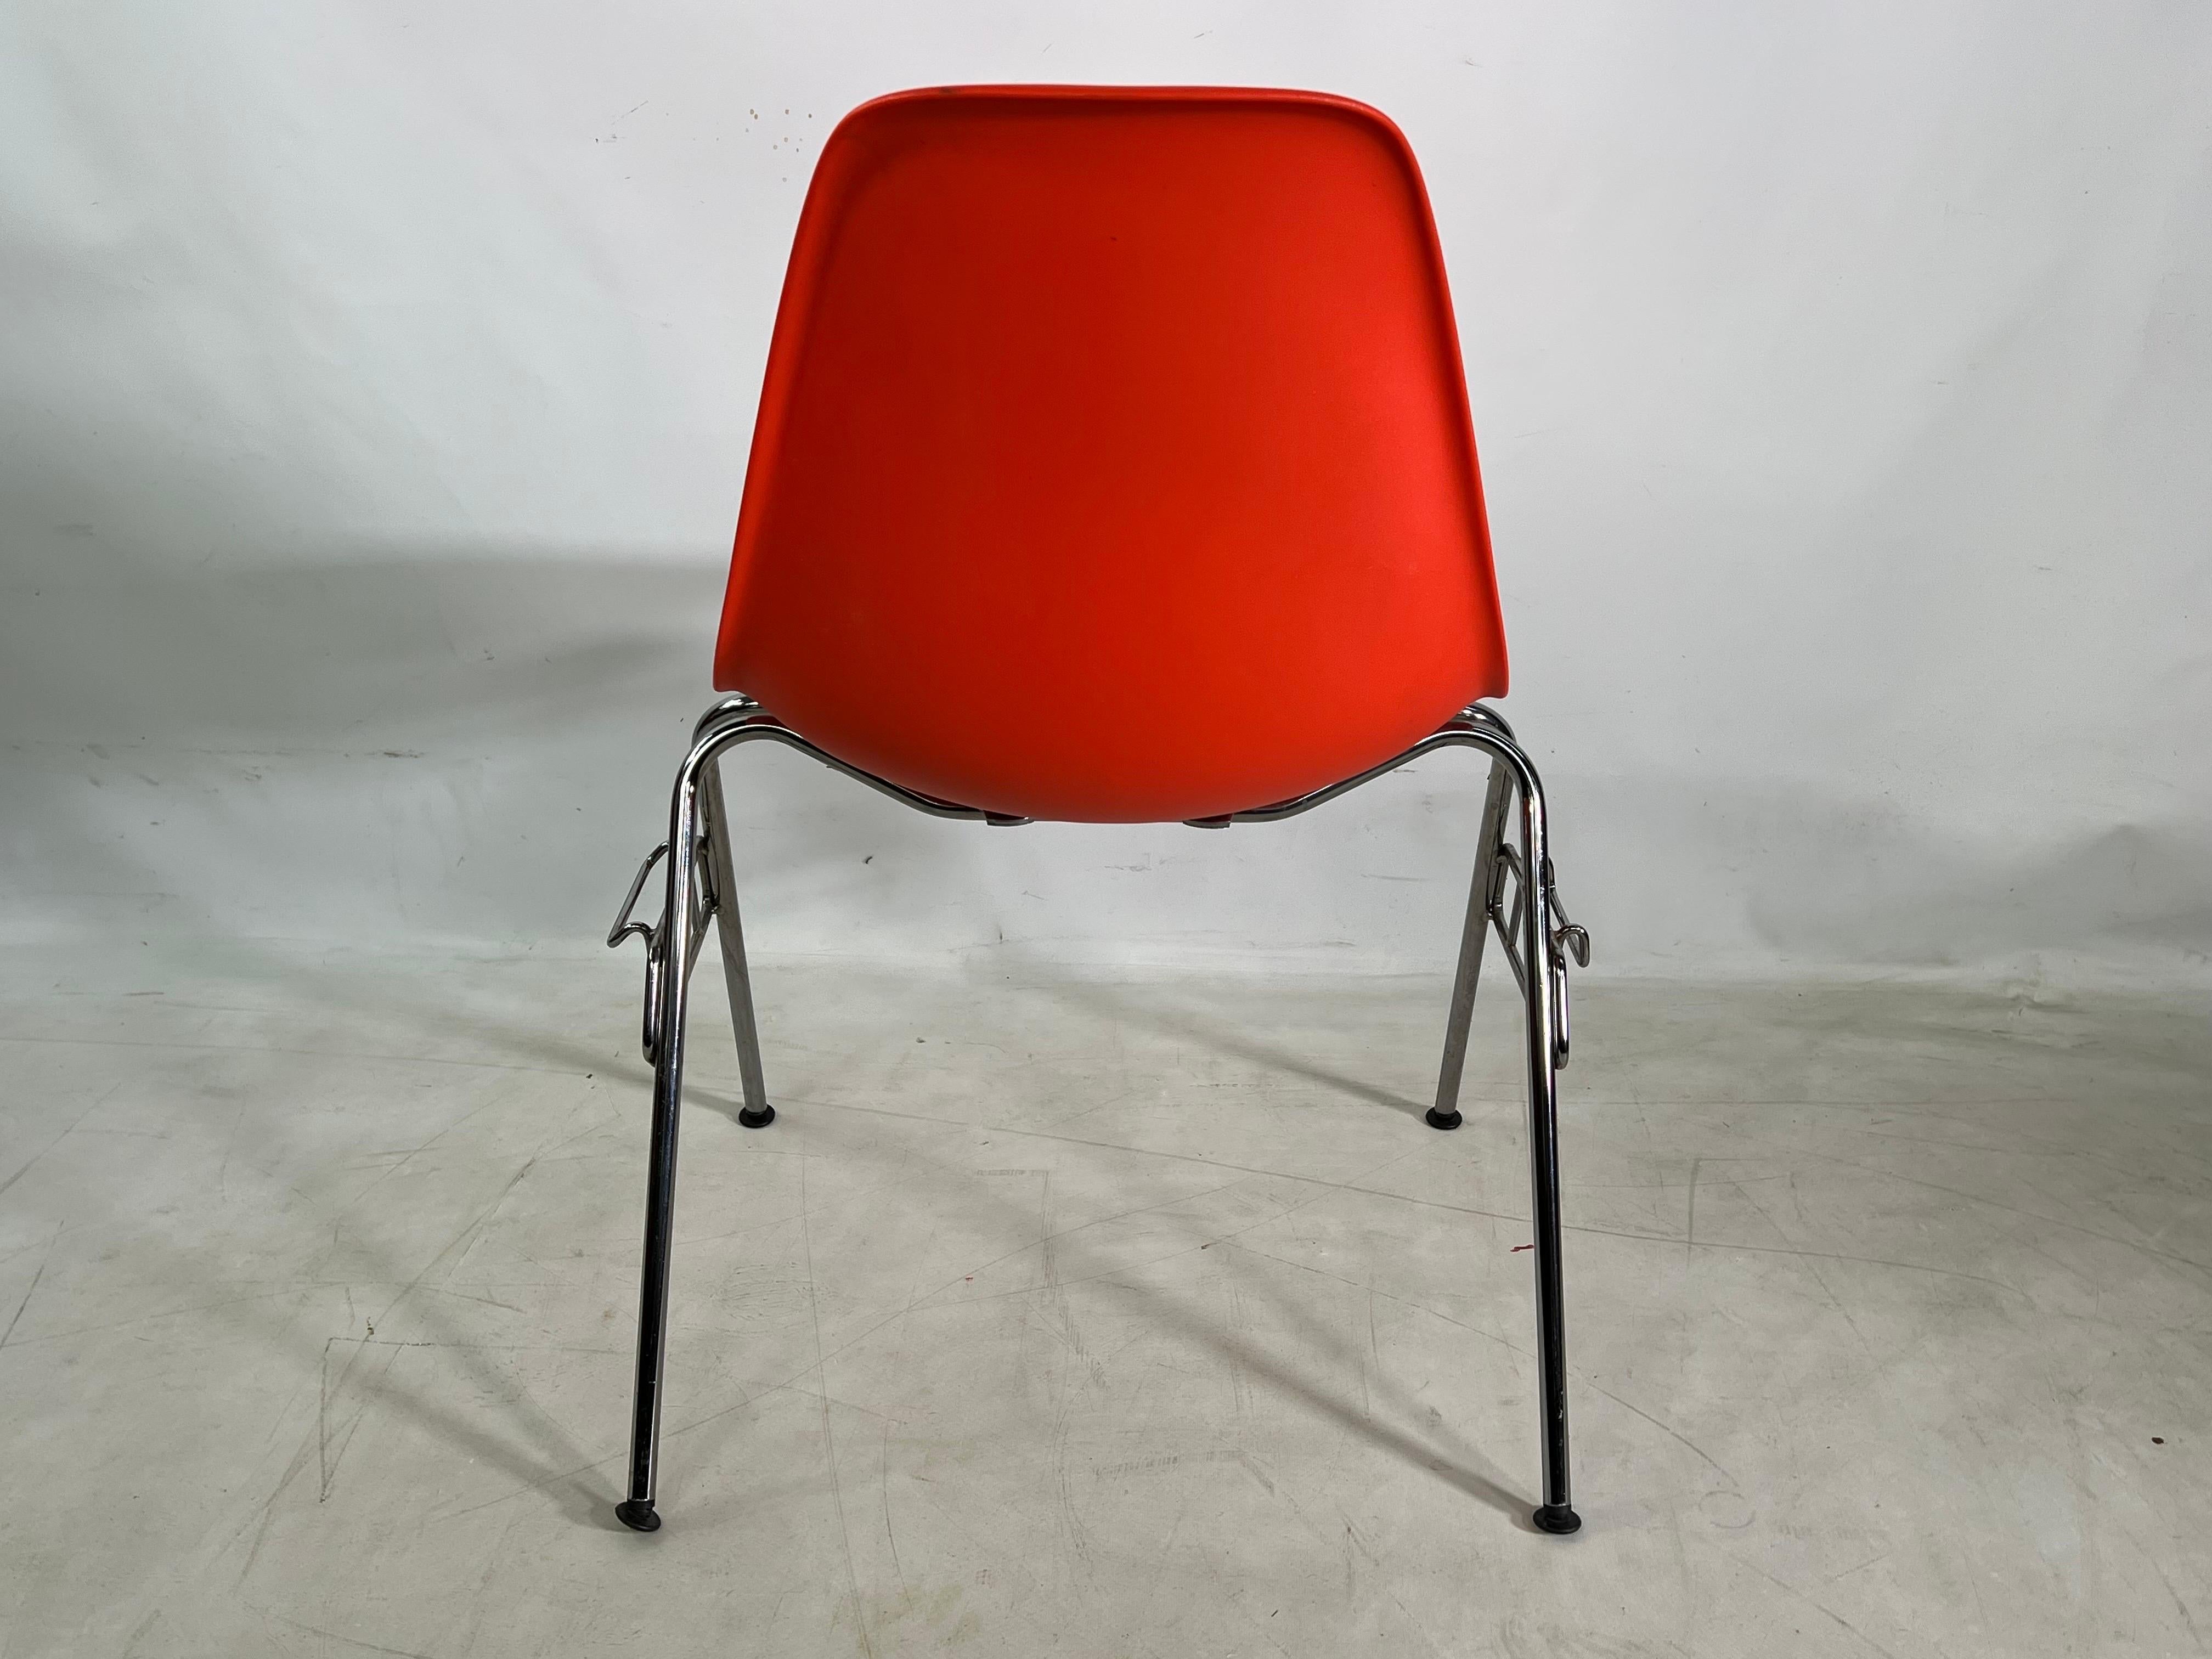 Modern Living - In den 1950er Jahren änderte die Eames-Schale alles, was einen Stuhl ausmachte - skulptural, praktisch und in Massenproduktion hergestellt. Dieses Grundnahrungsmittel des modernen Lebens ist jetzt aus recycelbarem Polypropylen und